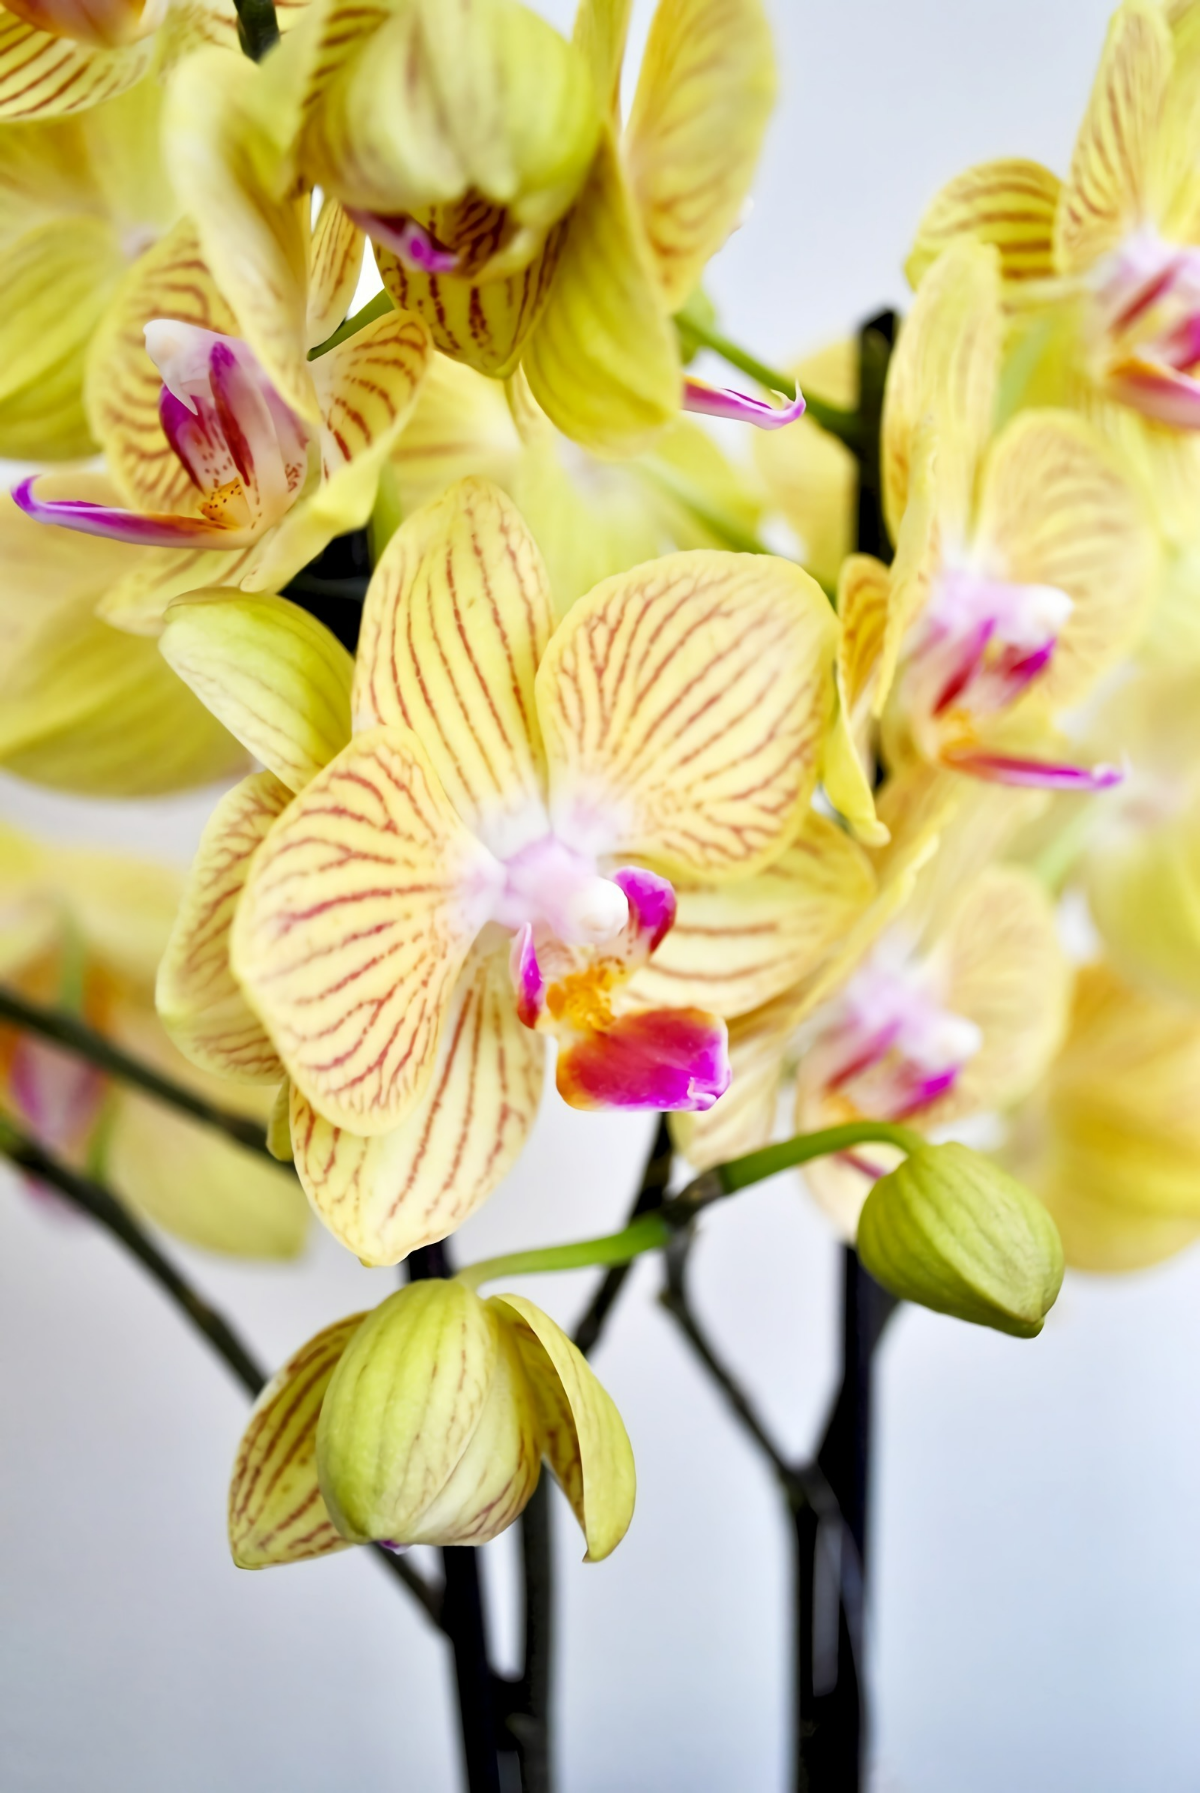 orchidee im glas ohne erde halten wie geht es